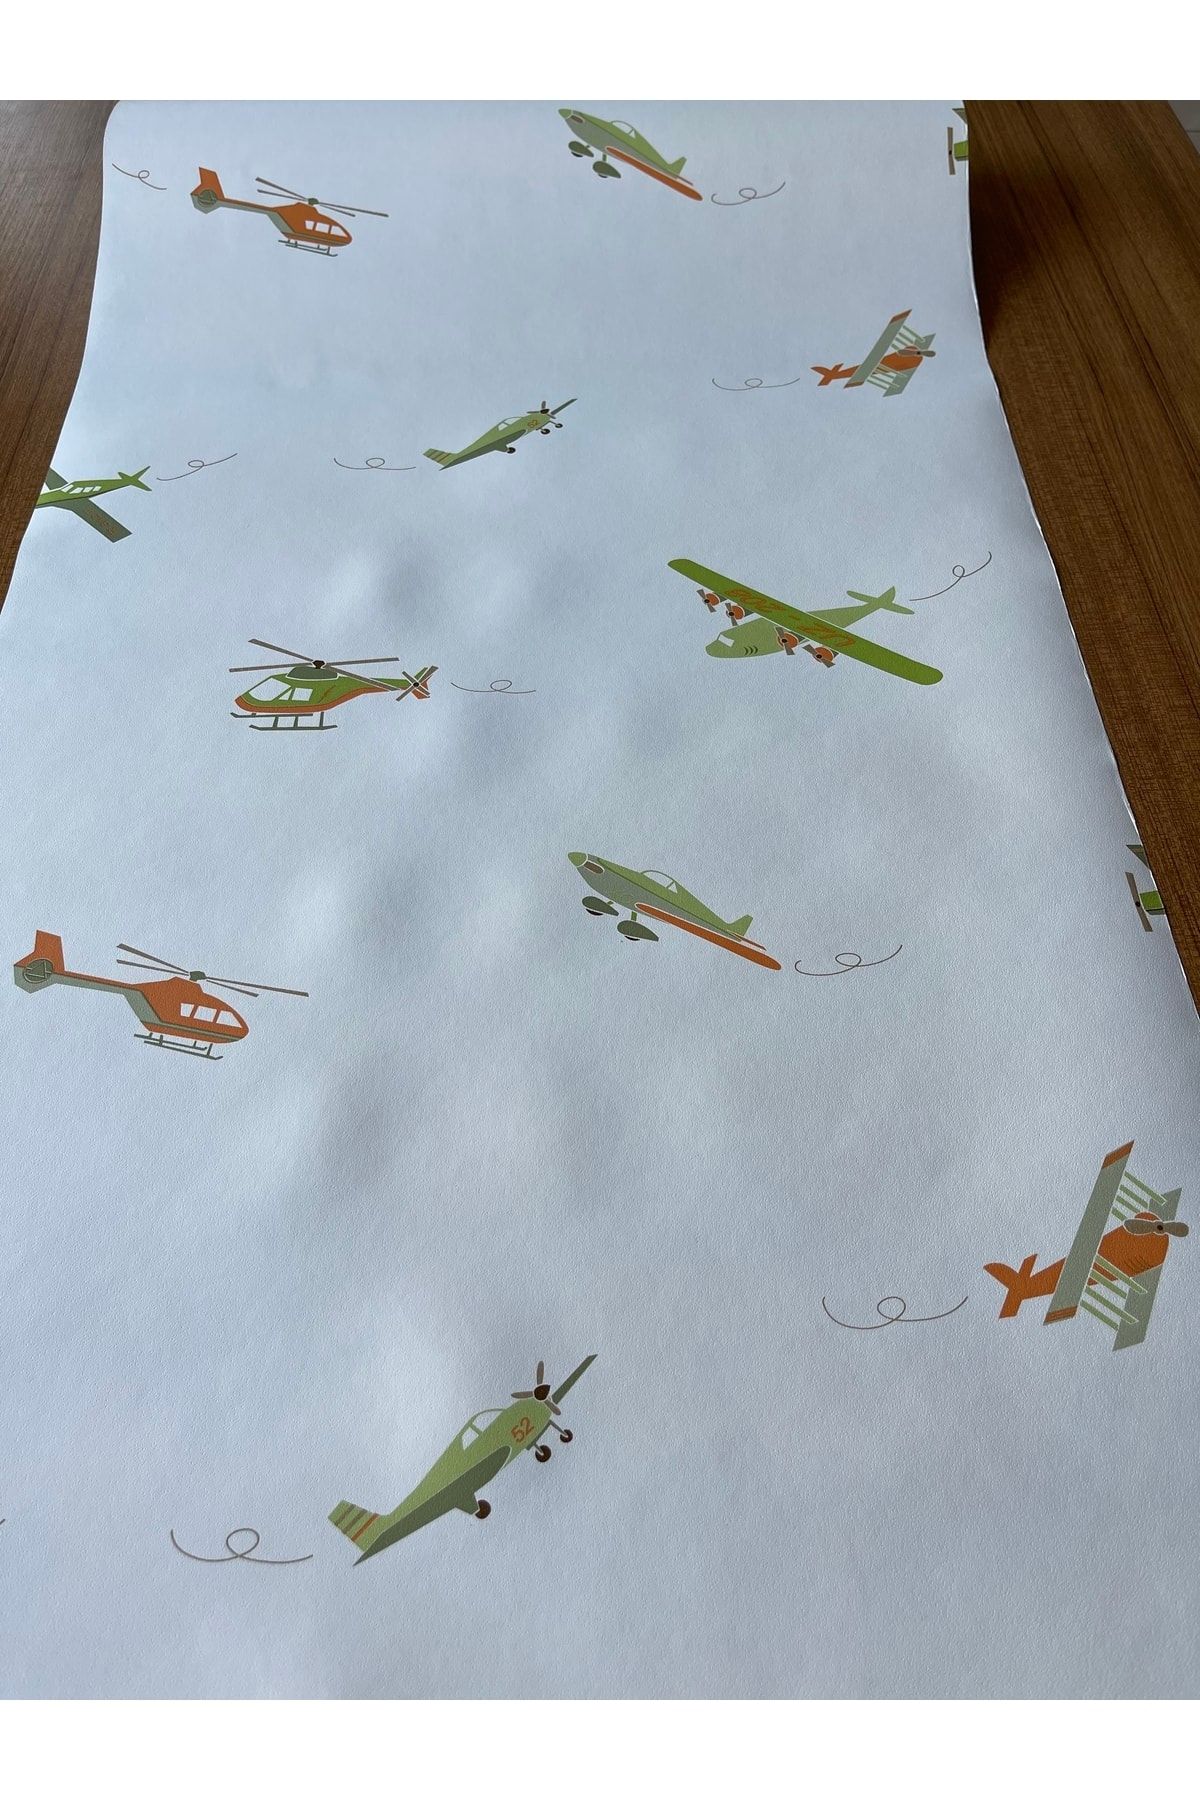 BAŞYAPI DİZAYN Helikopter-uçak Çocuk-bebek Odası Ithal Duvar Kağıdı (5m²)